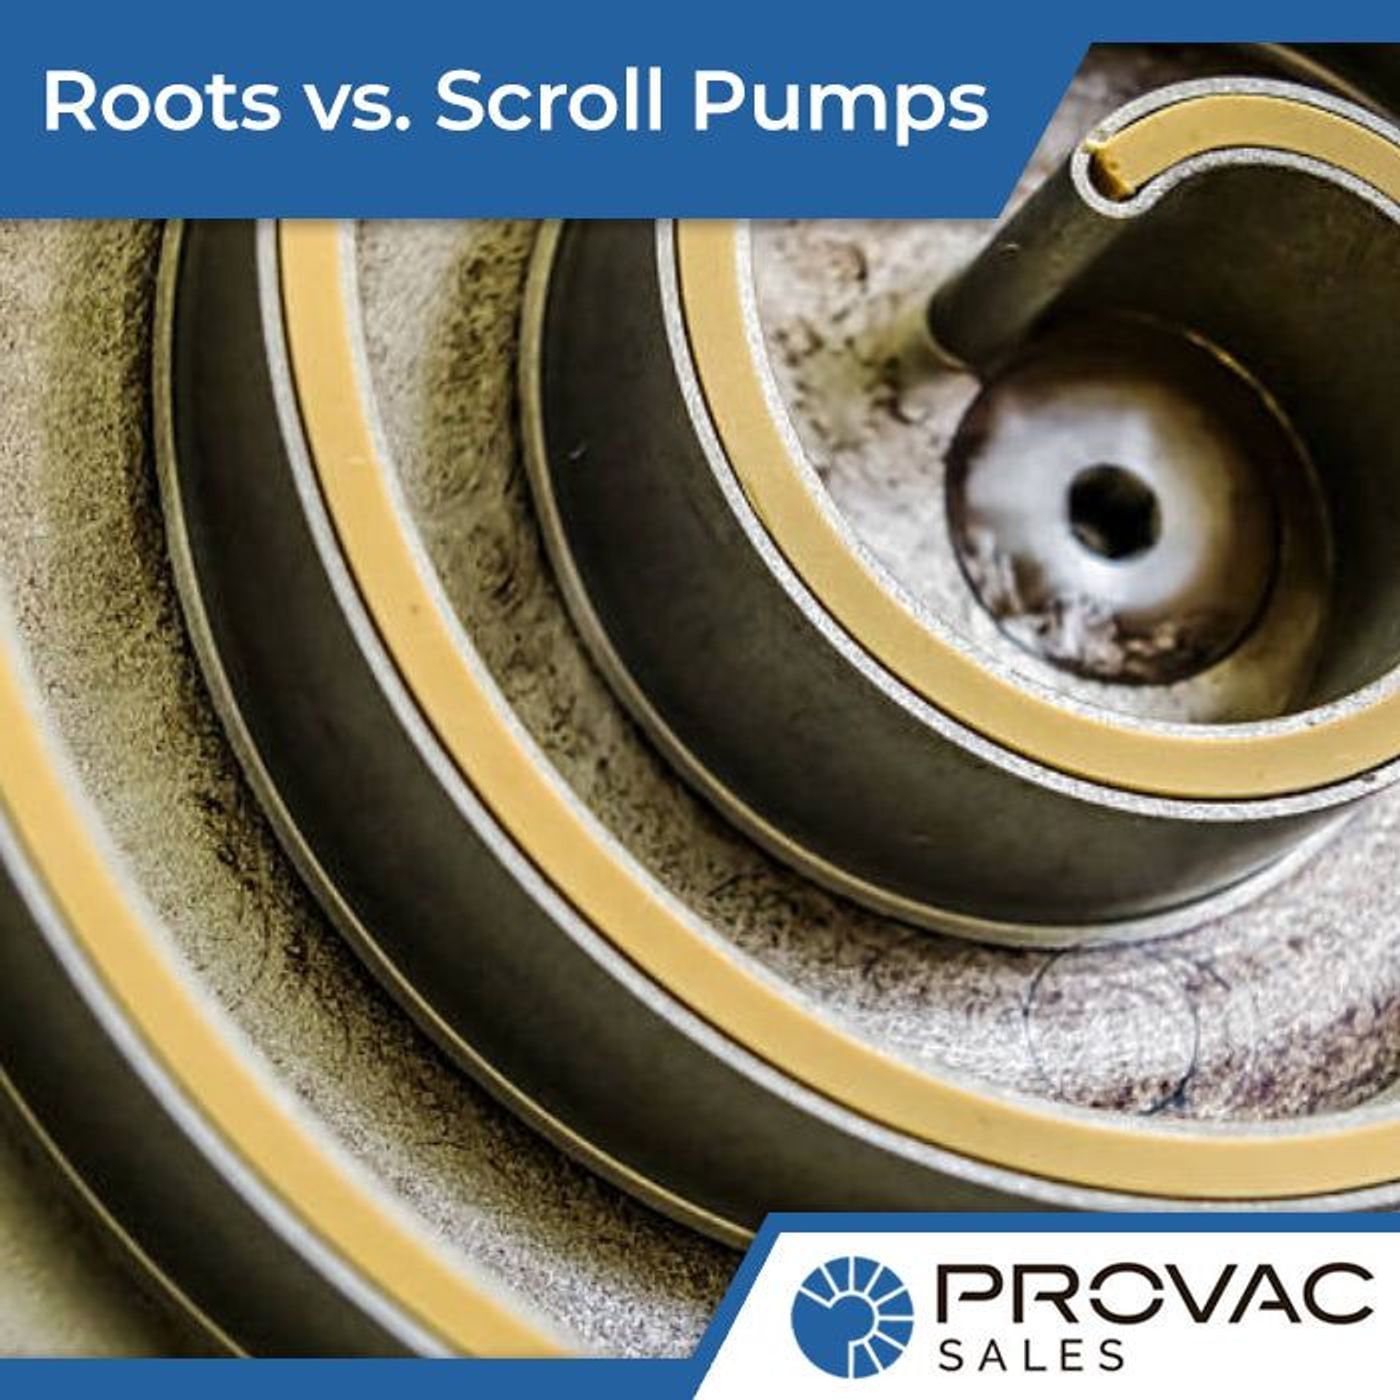 Roots Pumps vs. Scroll Pumps